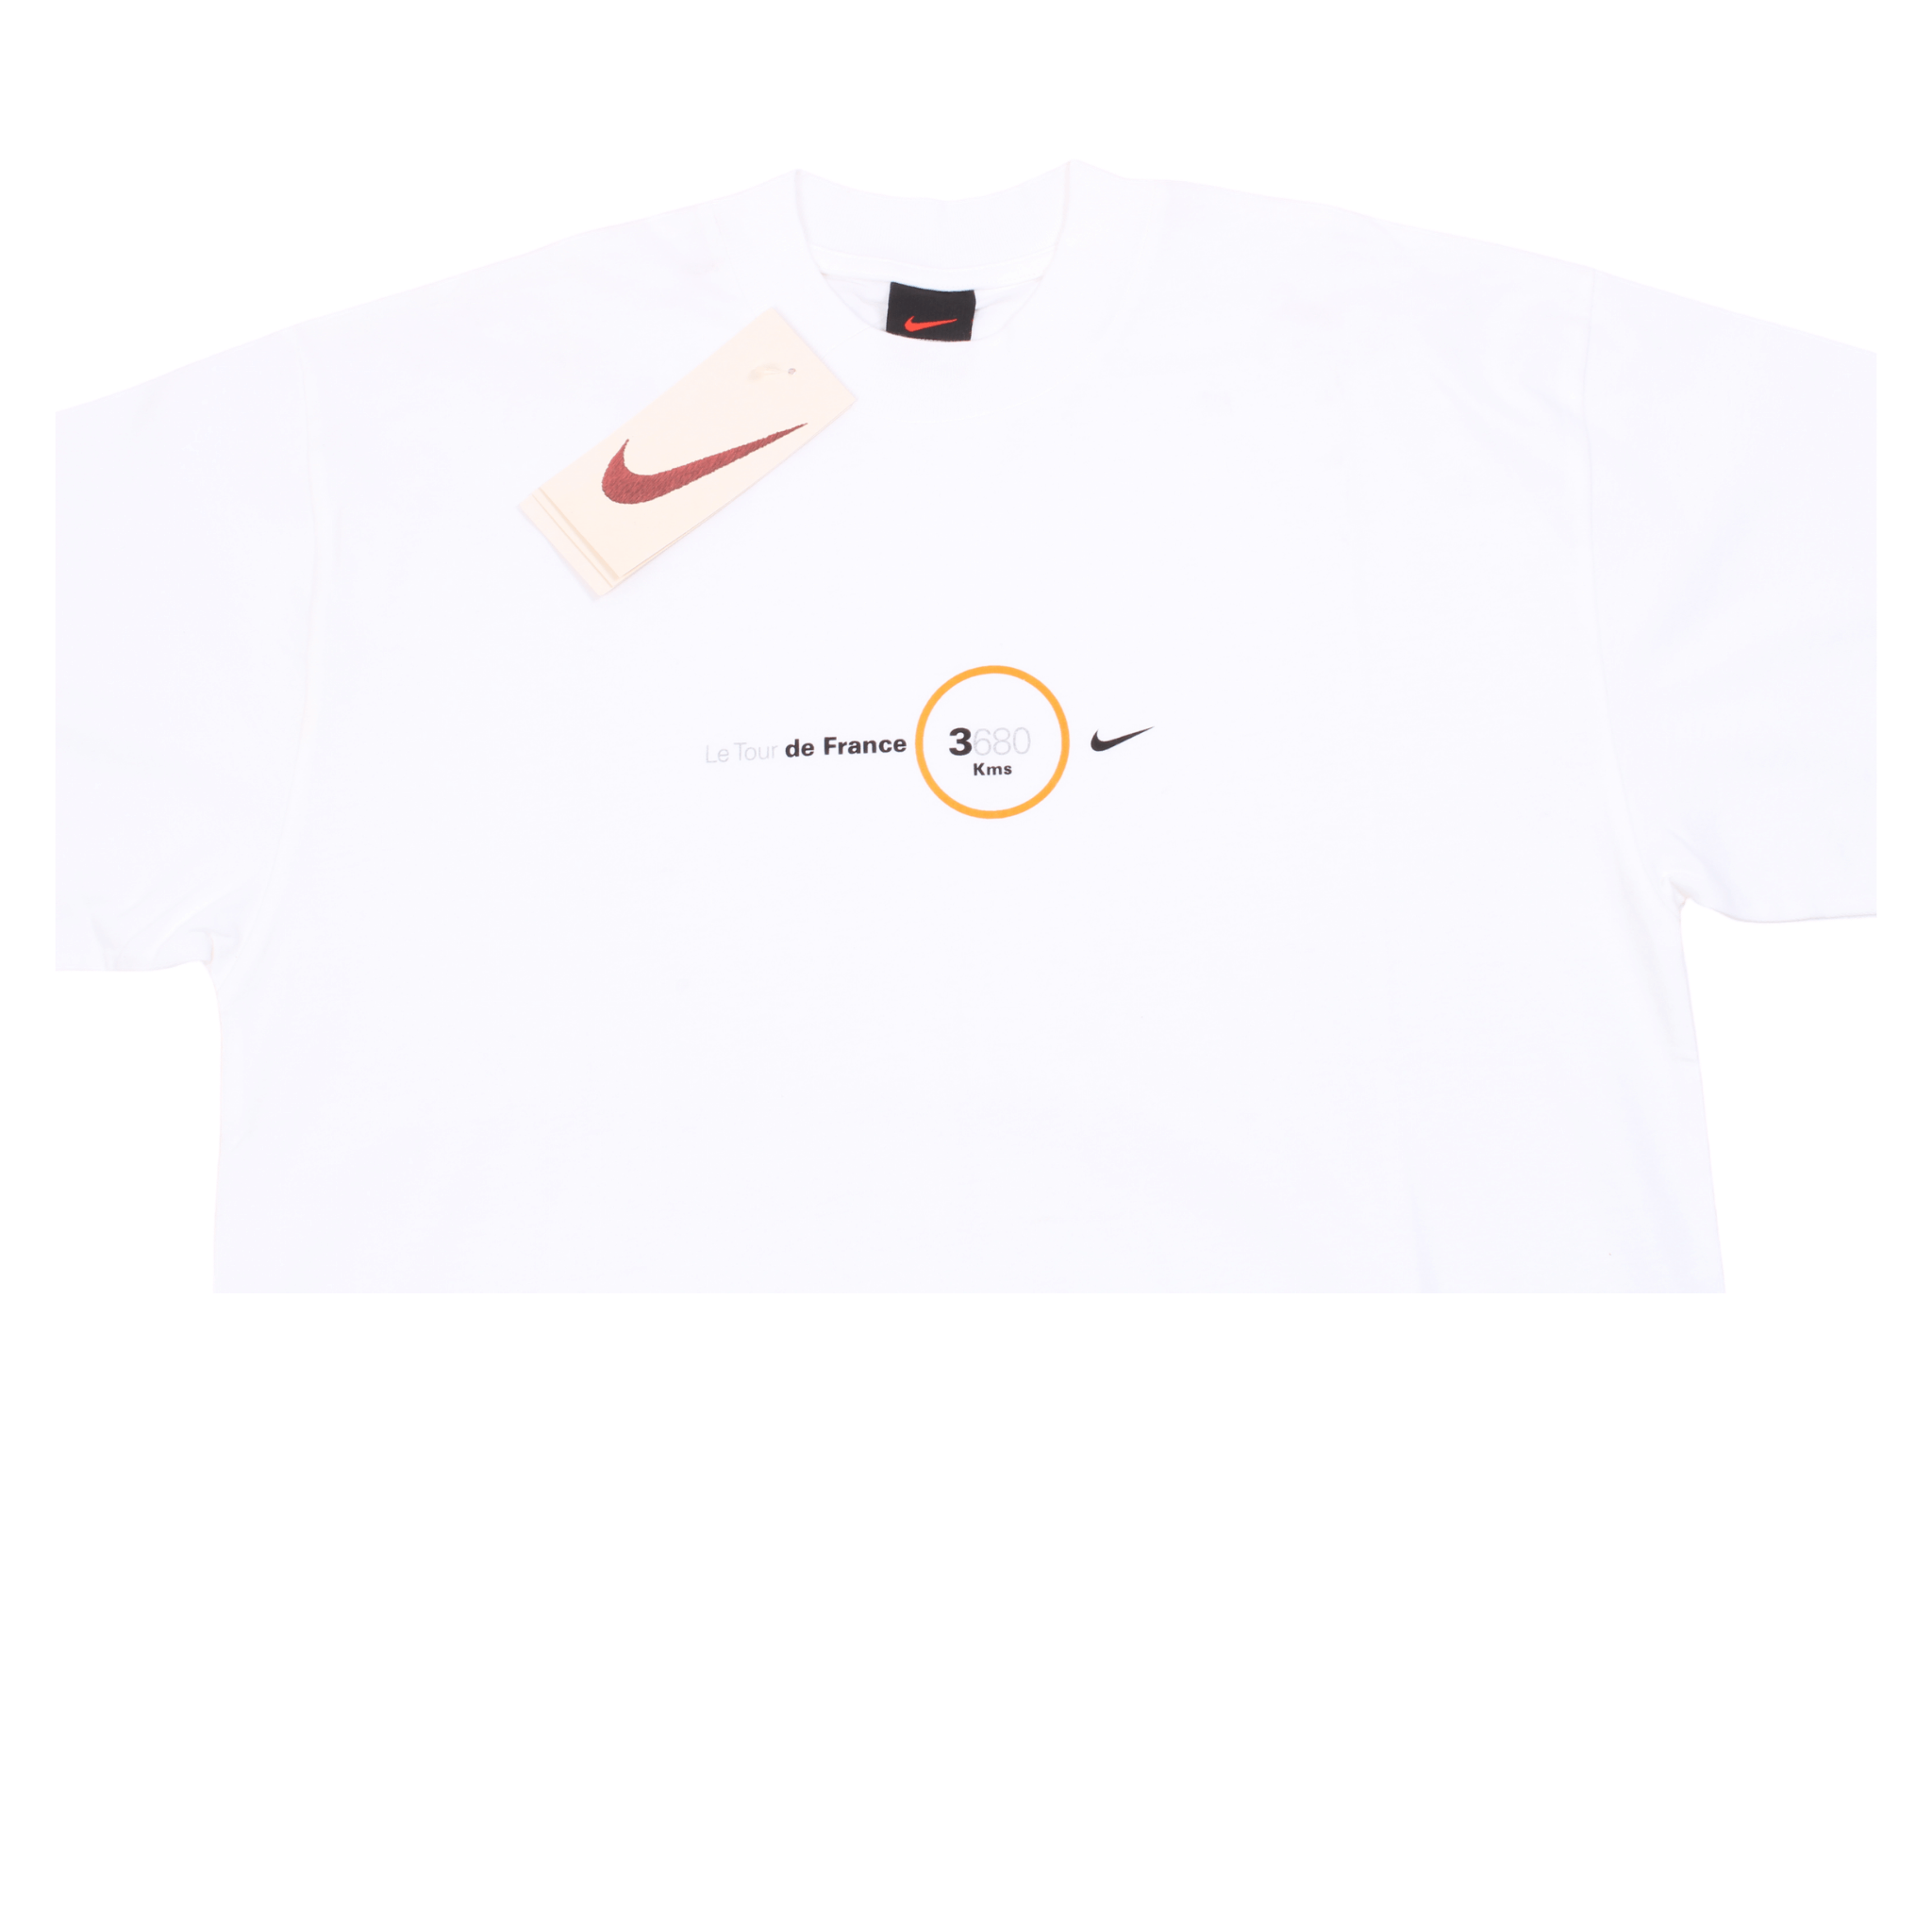 Vintage Nike 1999 Tour De France T Shirt (M) BNWT